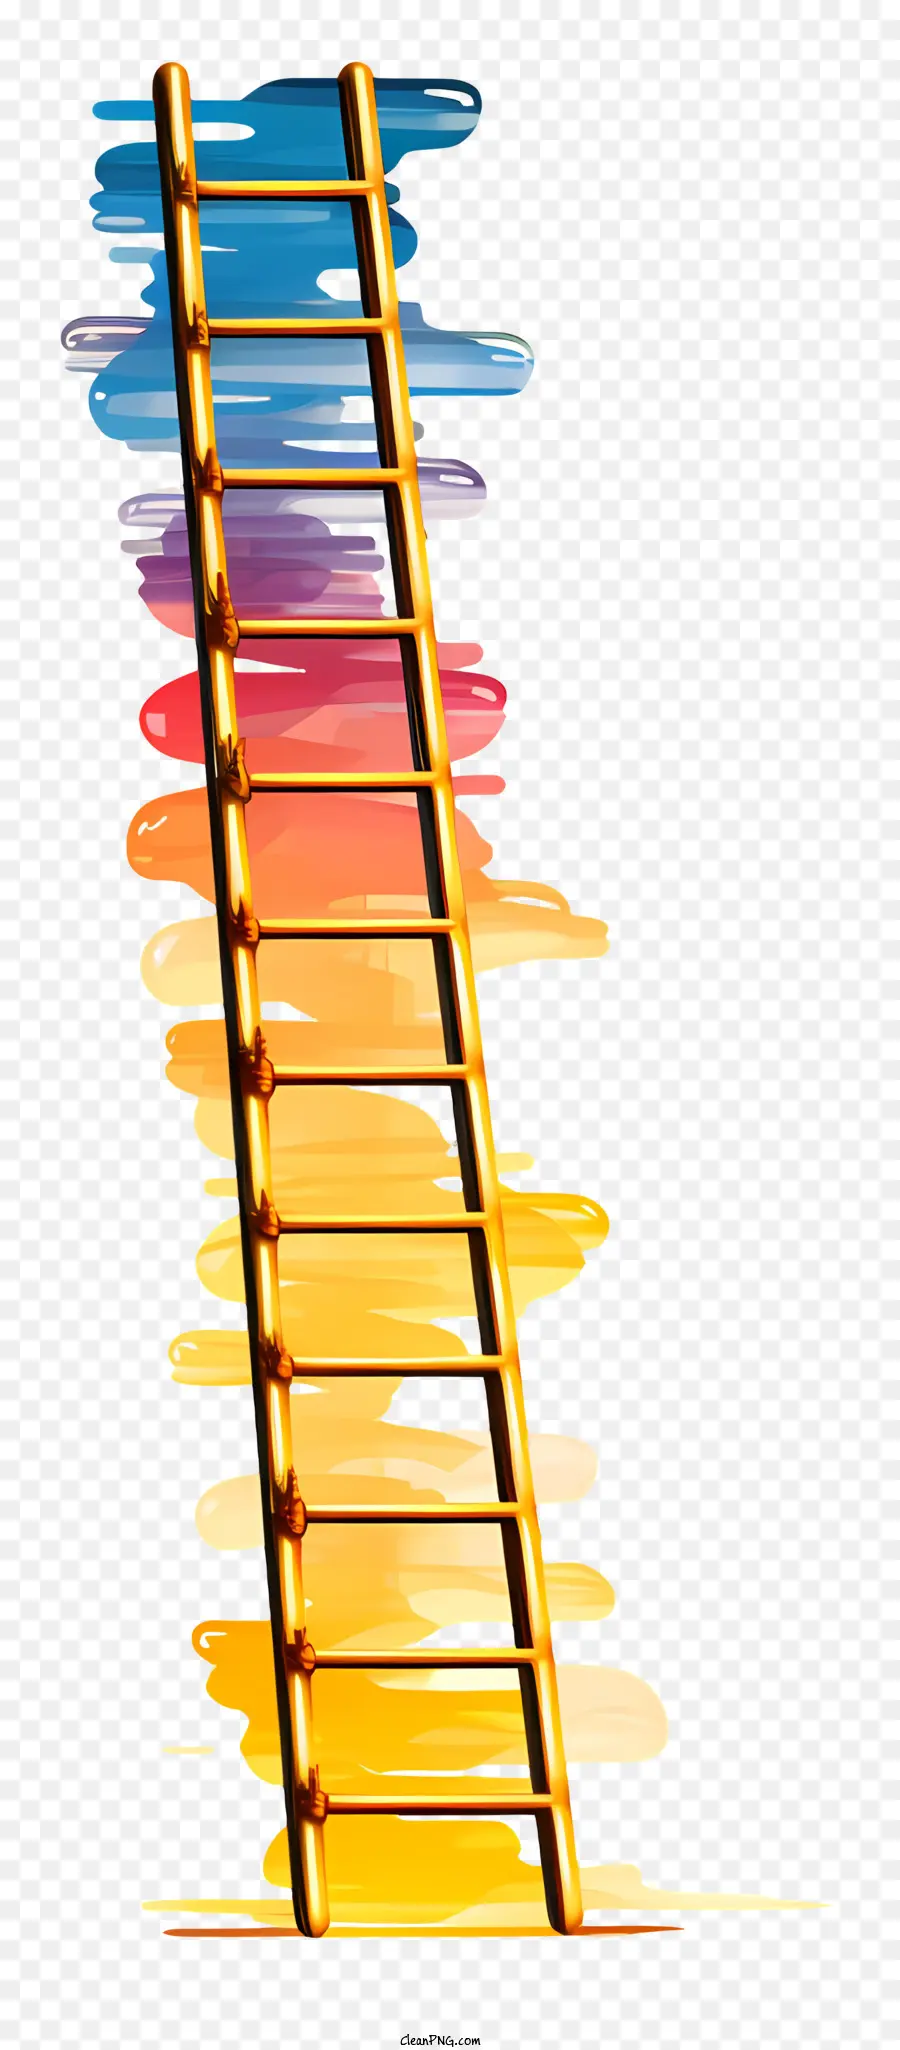 Escada Do Arco íris，Escada Colorida PNG